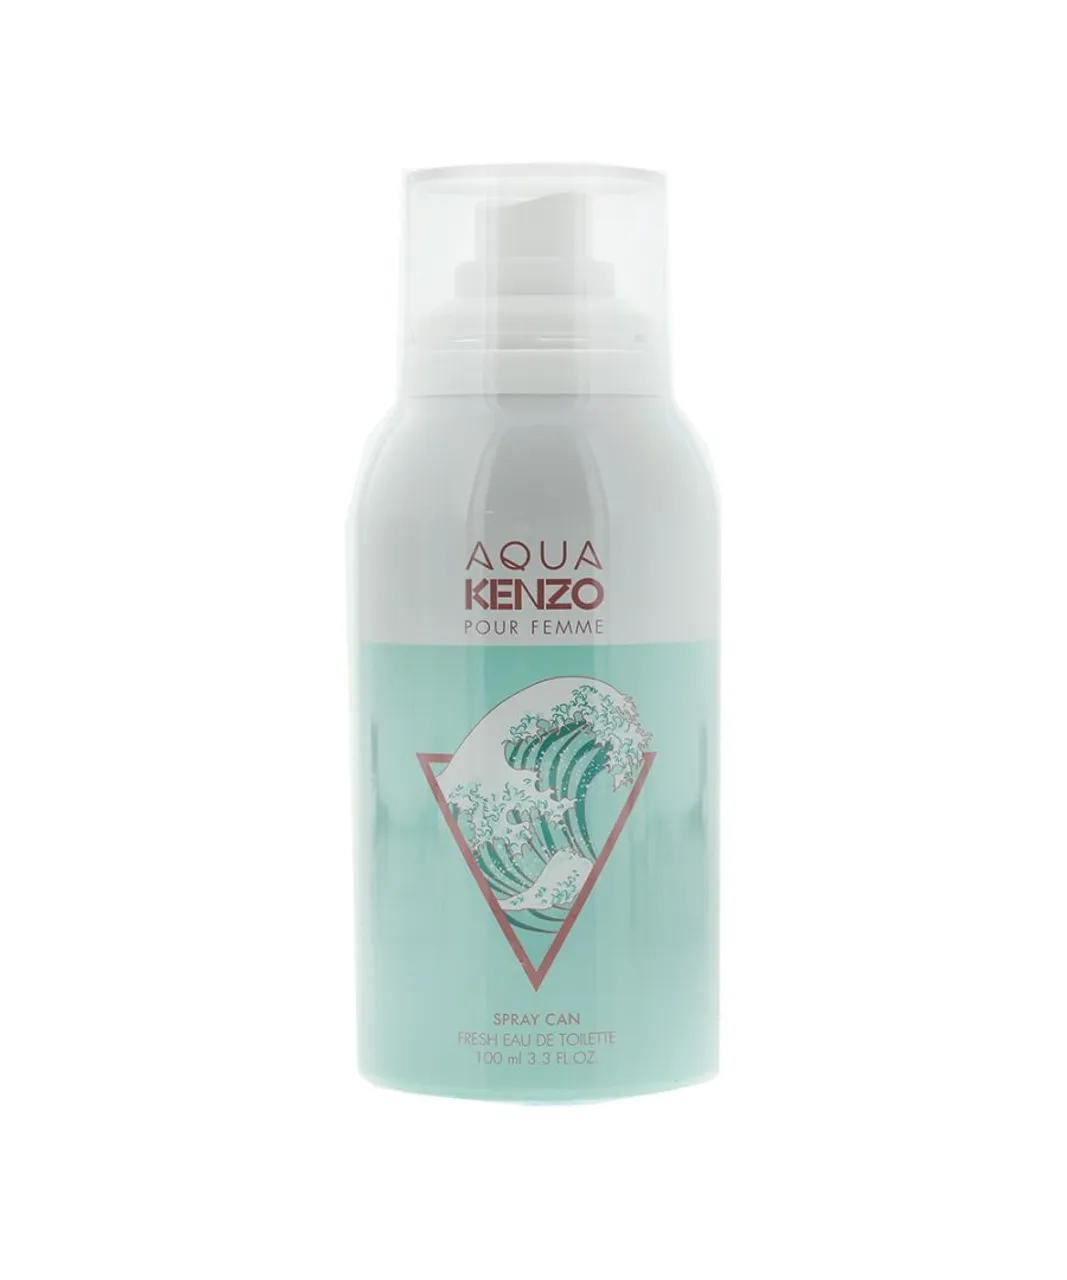 Kenzo Womens Aqua Pour Femme Fresh Eau de Toilette 100ml Spray Can - Apple - One Size